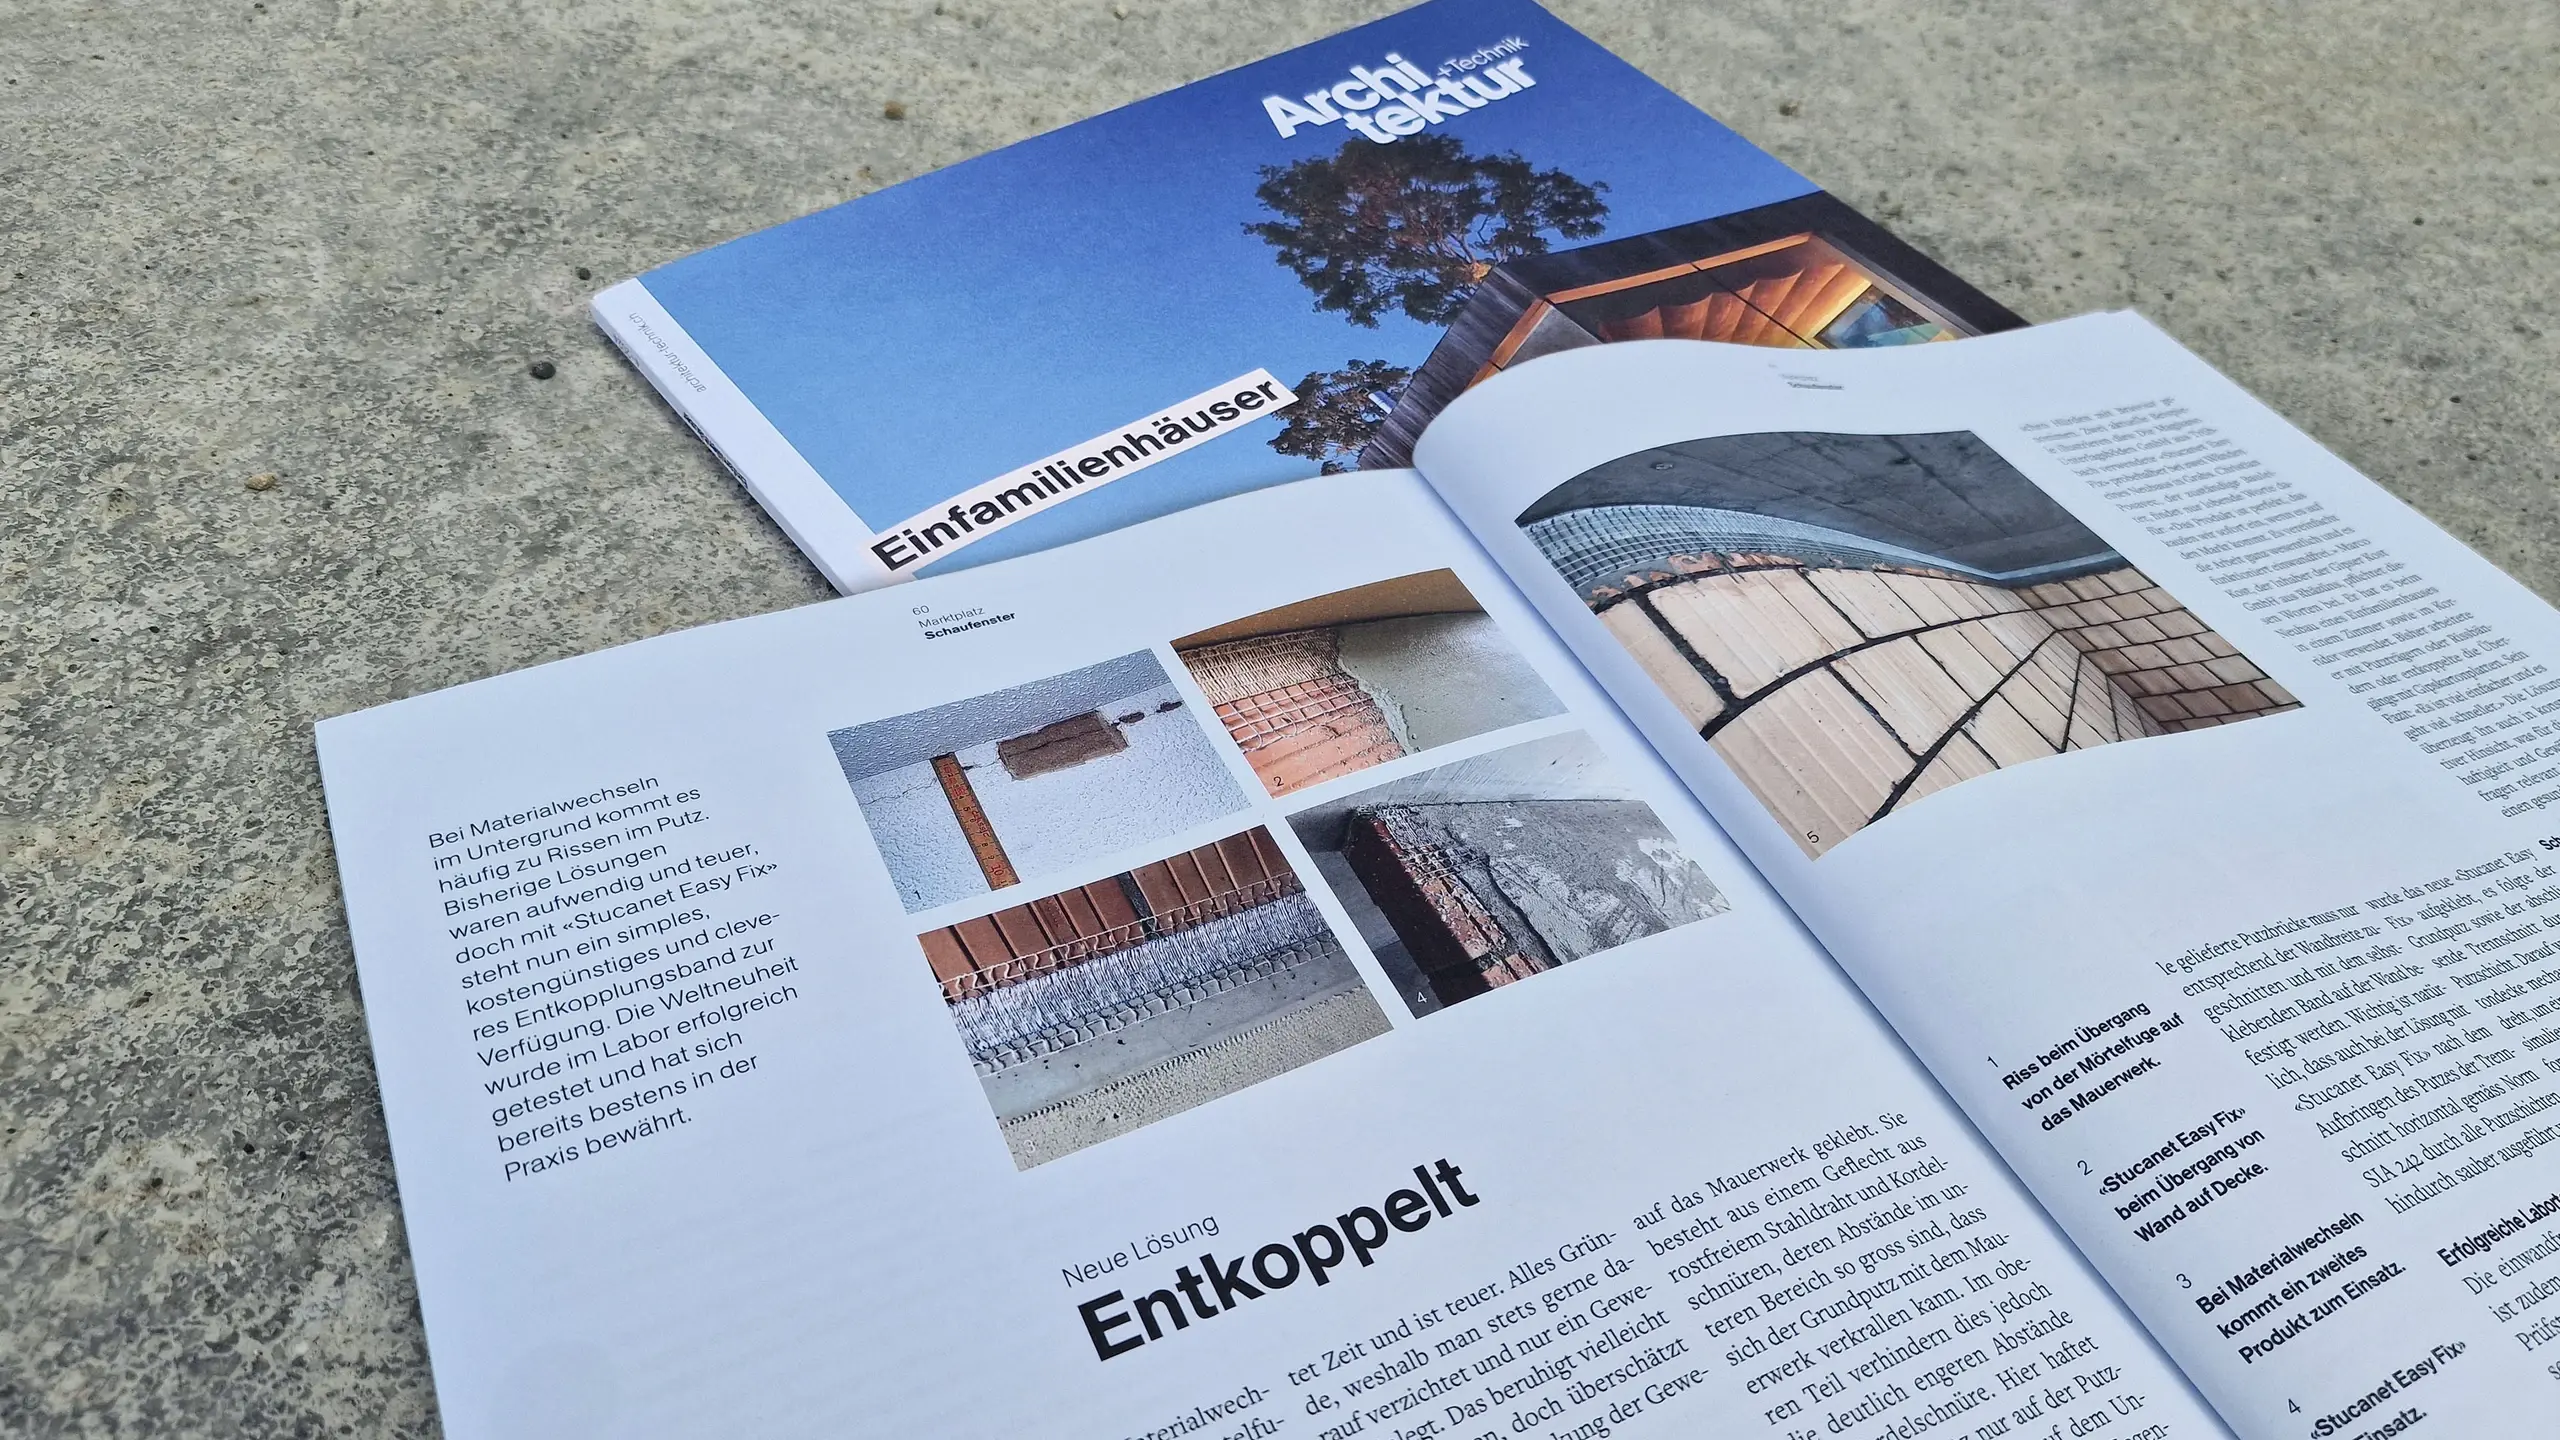 Titelblatt des Magazins "Architektur+Technik" mit dem aufgeschlagenen Artikel zur Weltneuheit Stucanet® Easy Fix Entkopplungsband